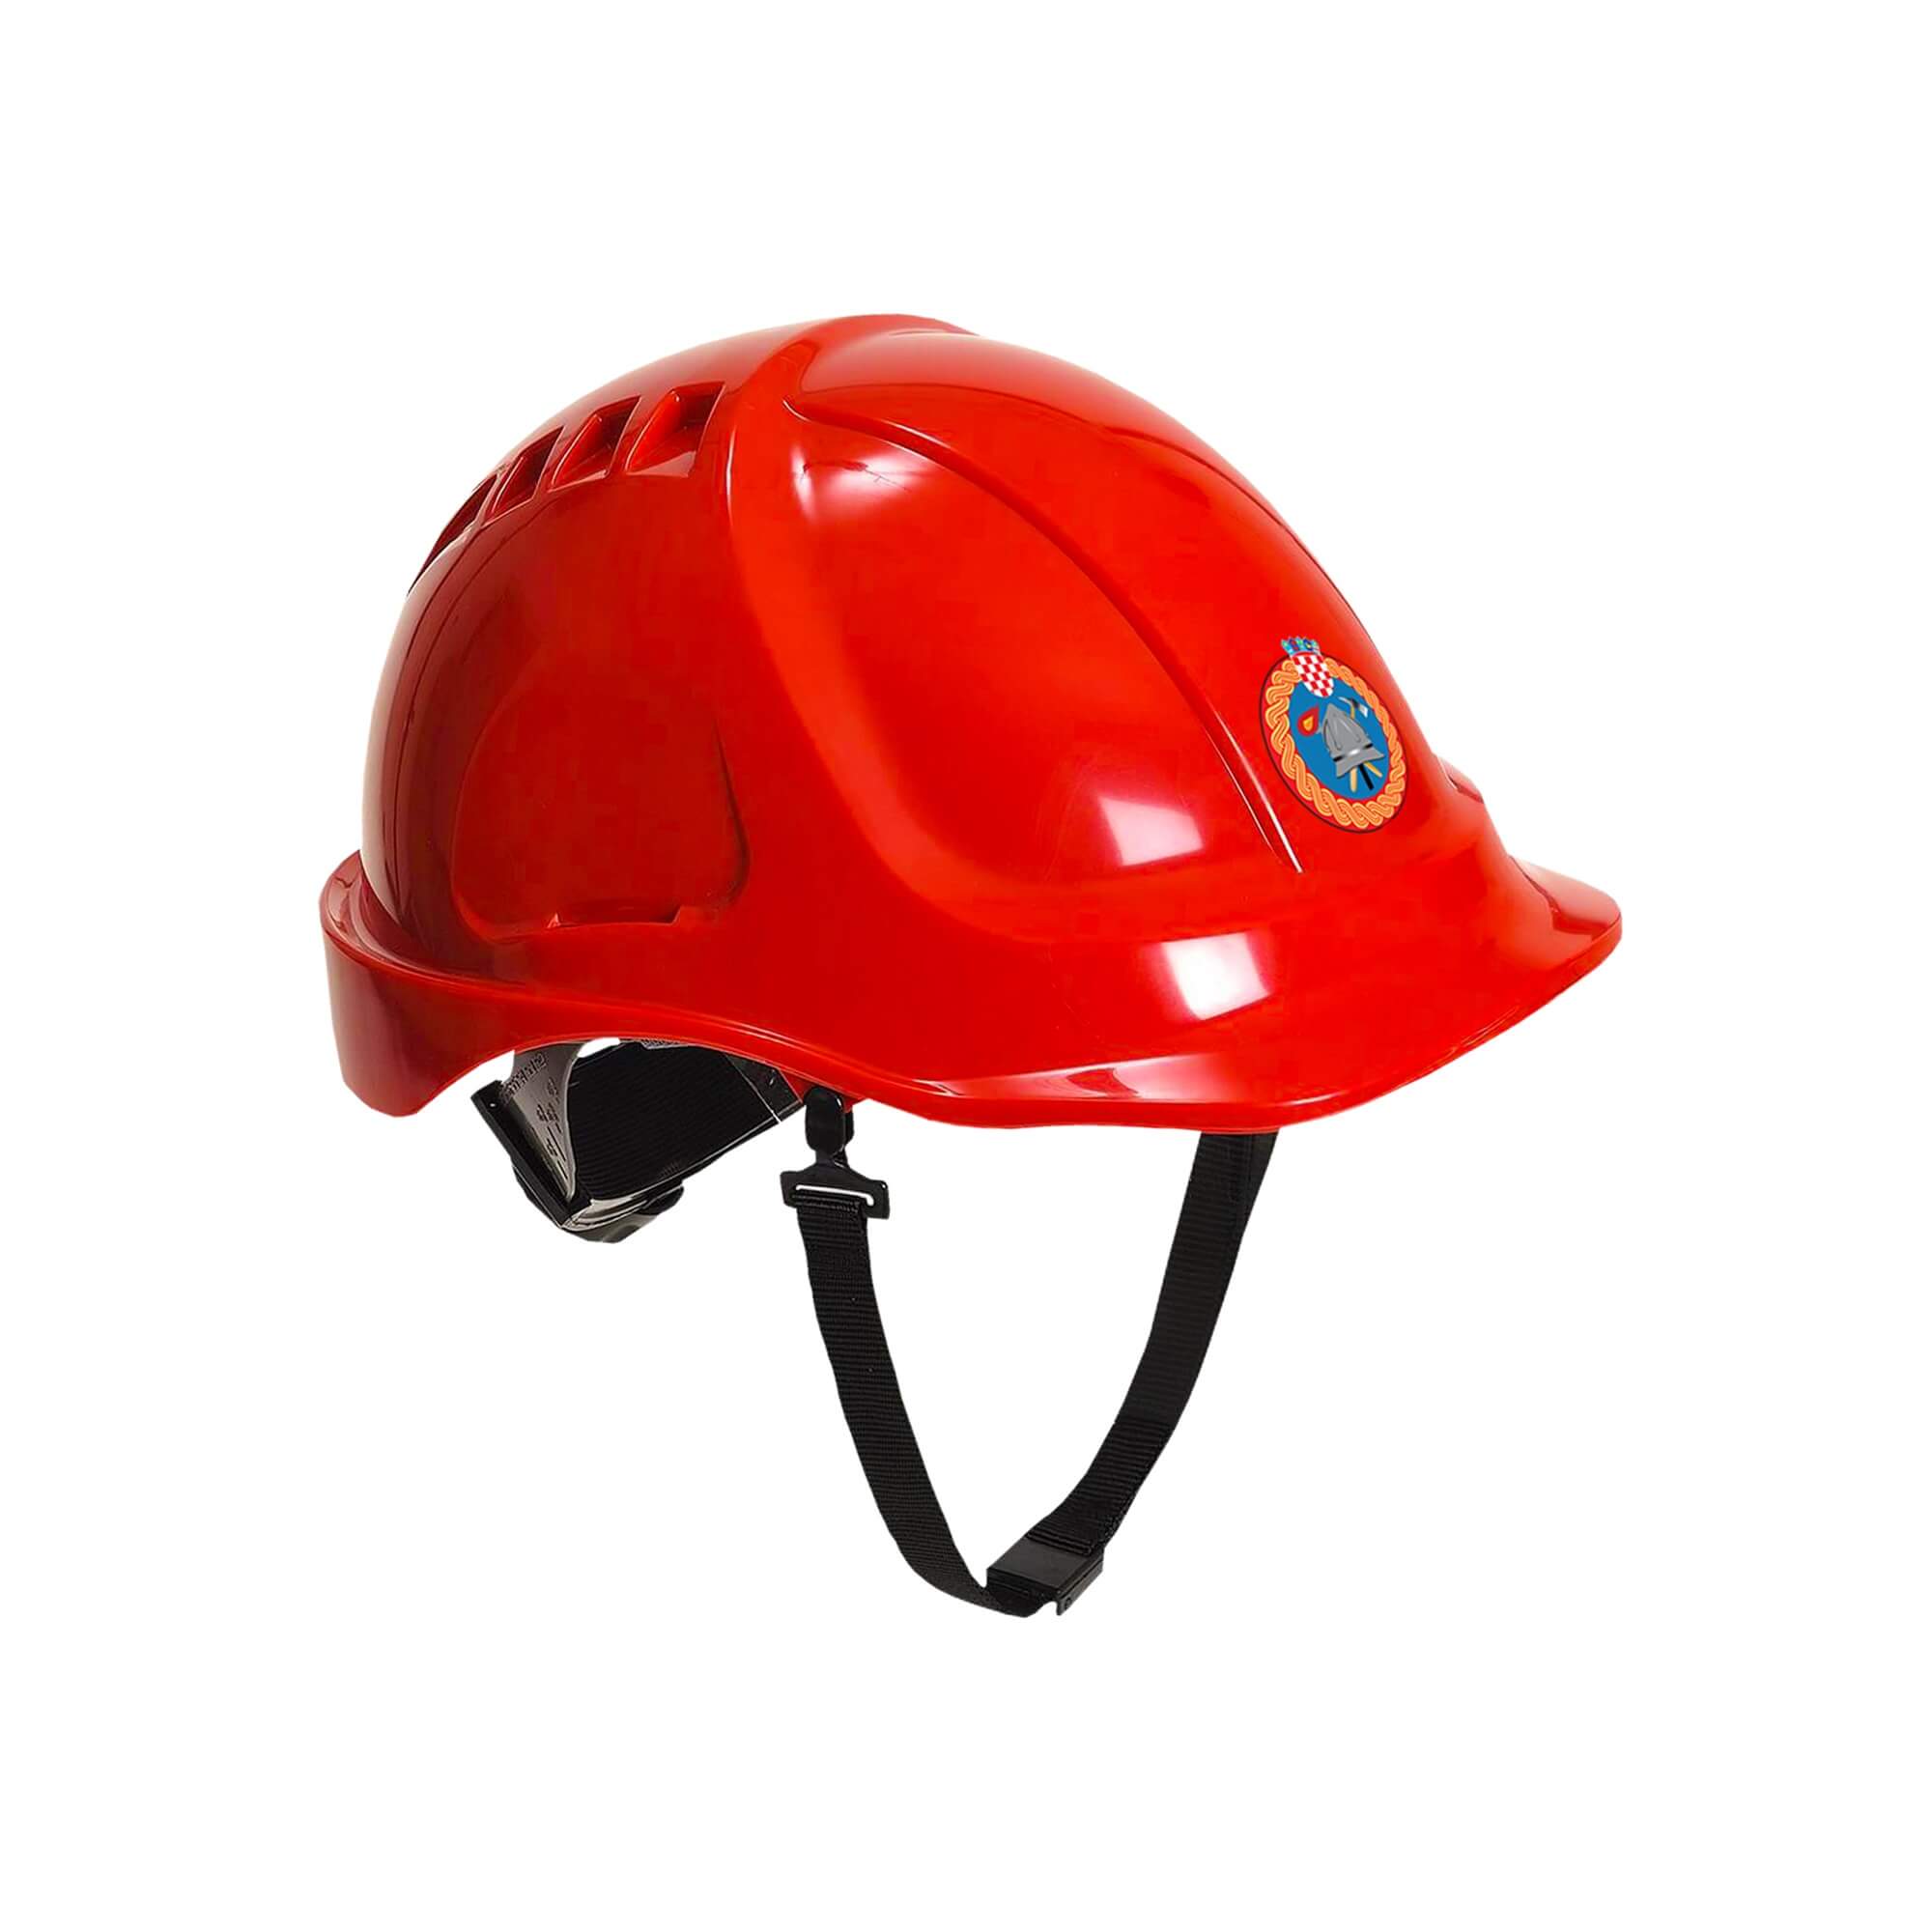 Firefighter helmet for children